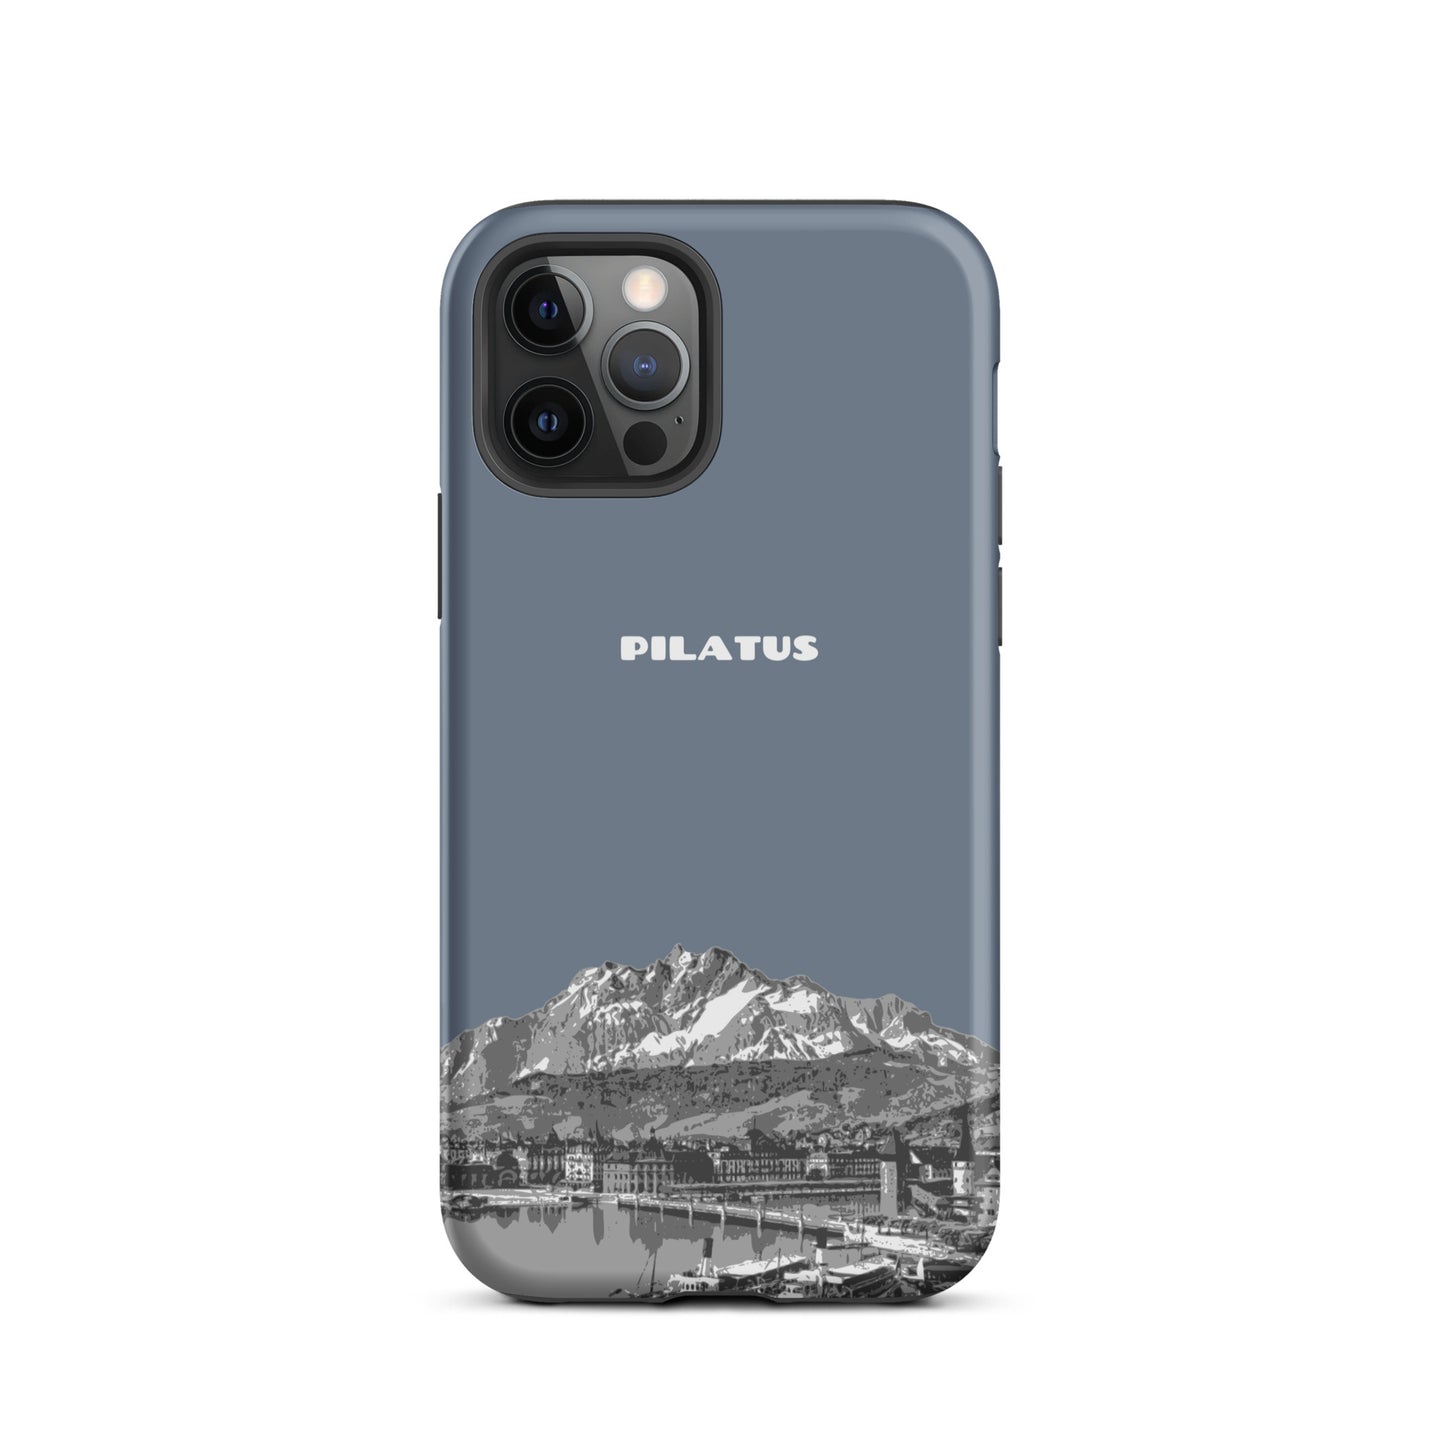 iPhone Case - Pilatus - Schiefergrau